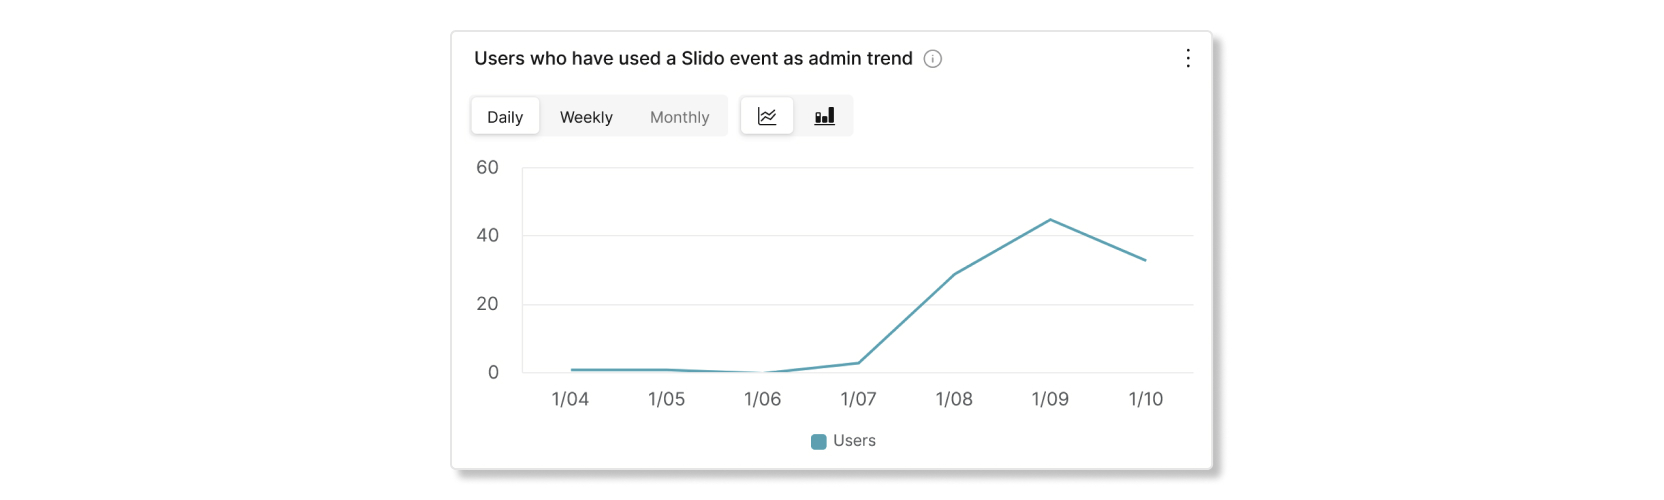 Usuarios que han utilizado un evento de Slido como gráfico de tendencias de administración en el análisis de Slido Control Hub